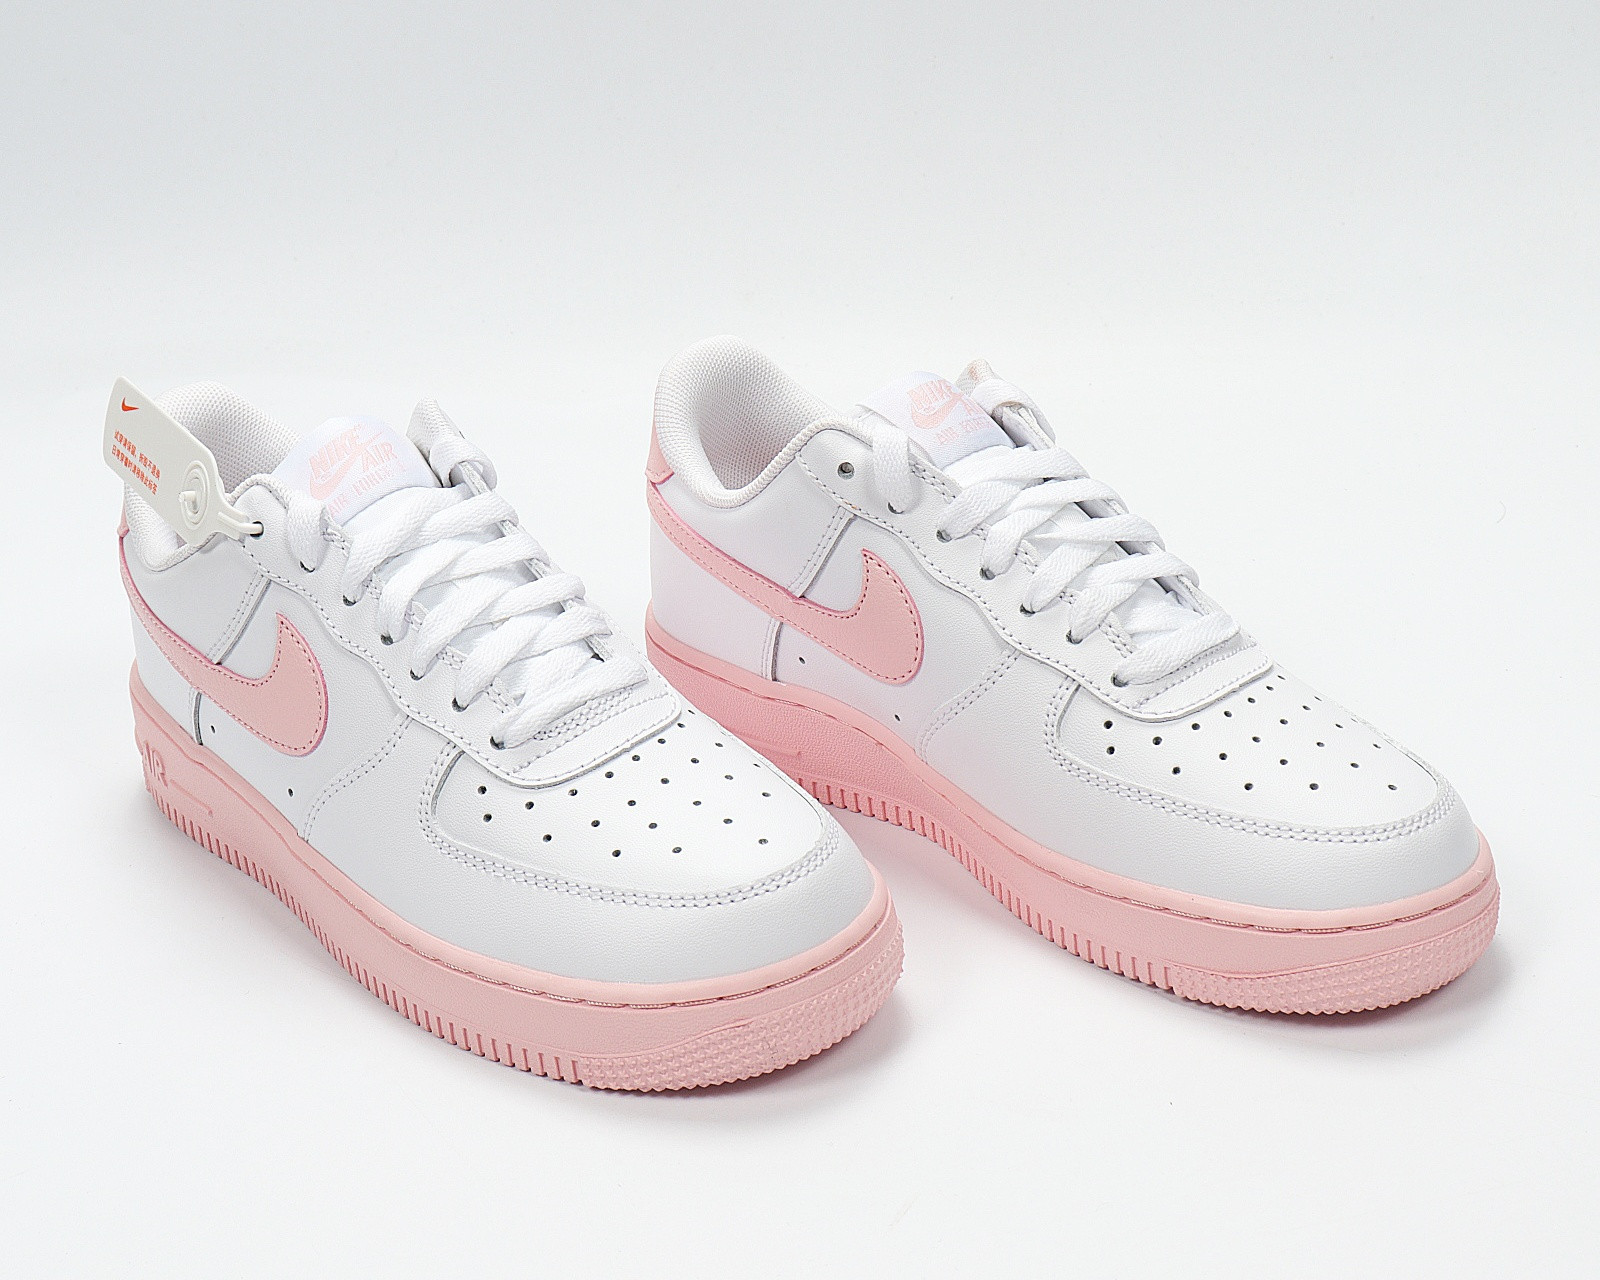 Nike Air Force 1 GS White Pink Foam Running Shoes CV7663-100 - Air ...